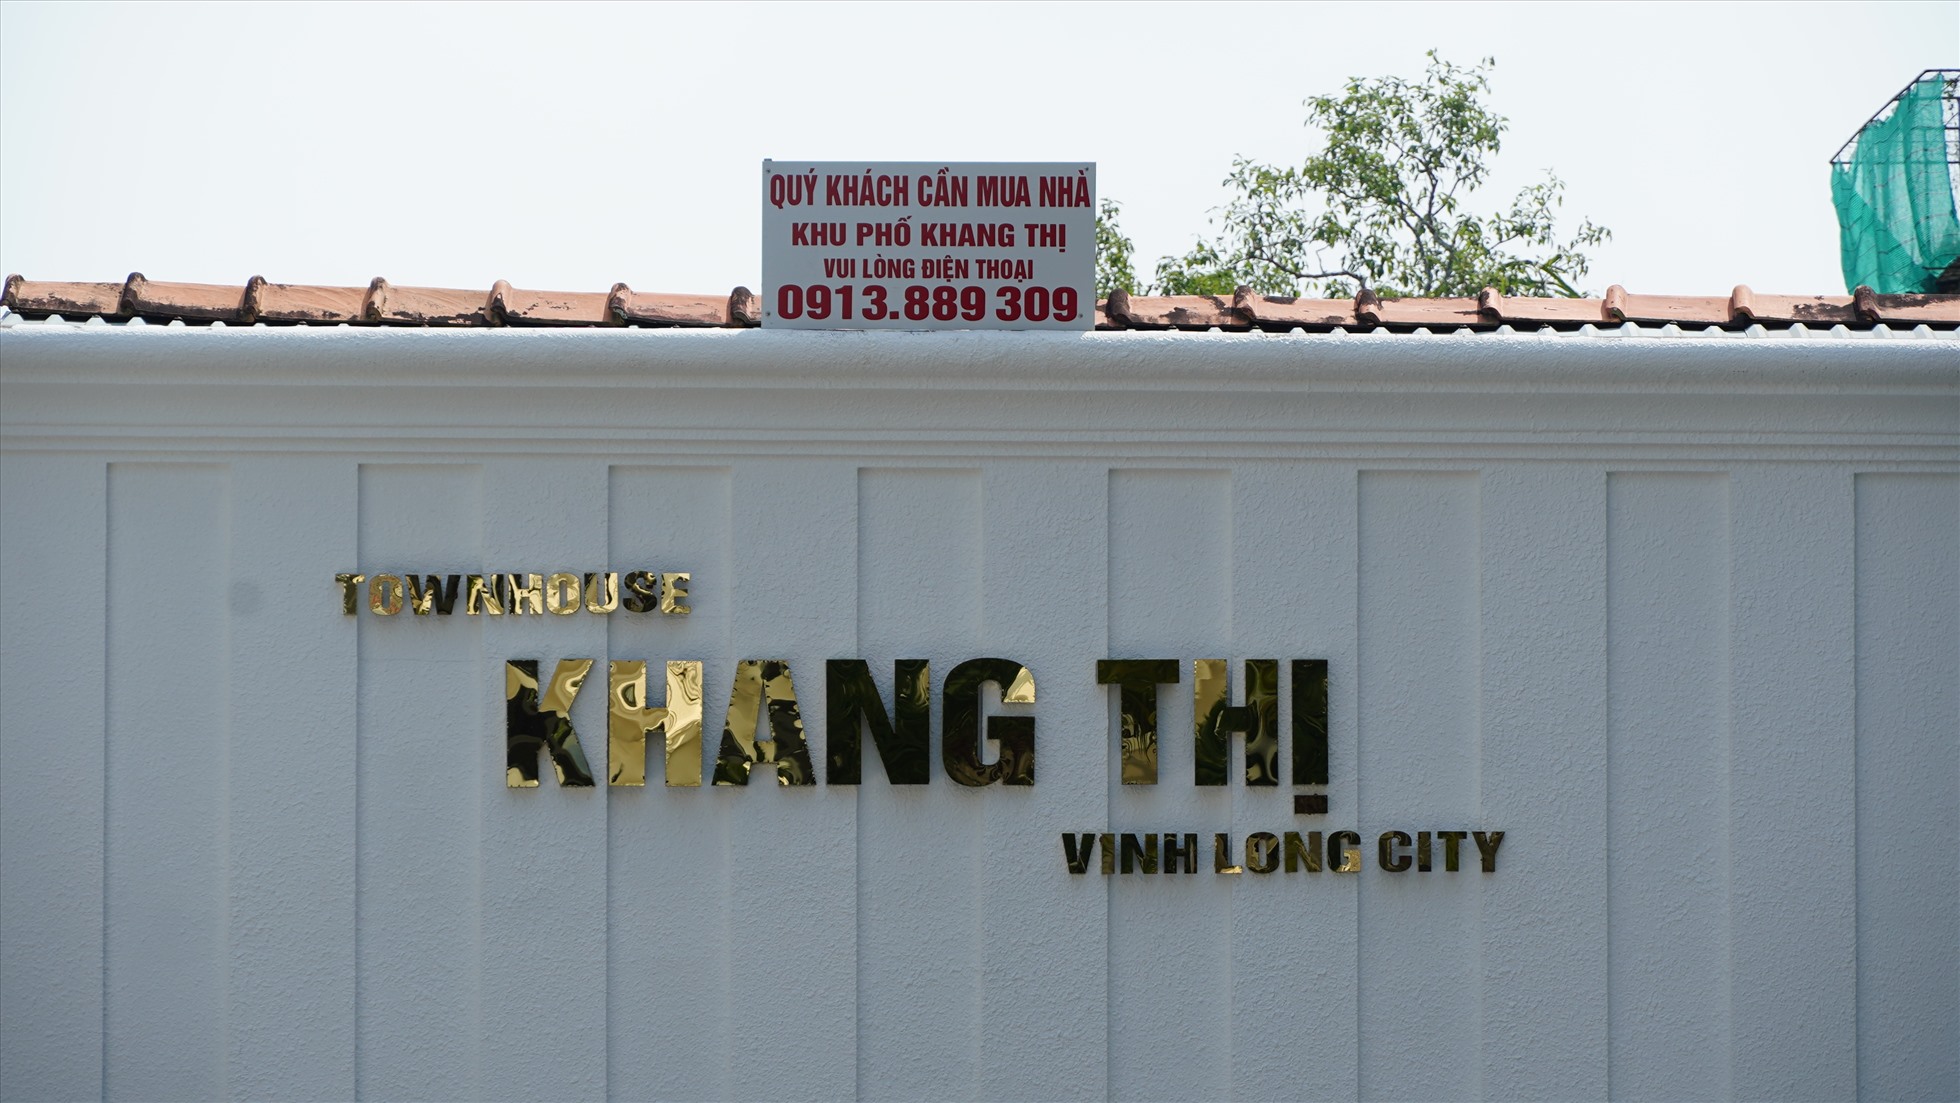 Ghi nhận của Lao Động, công ty địa ốc P&G đã xây dựng dự án khu phố Khang Thị, nằm ngay trung tâm TP Vĩnh Long, trên tuyến đường Nguyễn Huệ, thuộc phường 2.